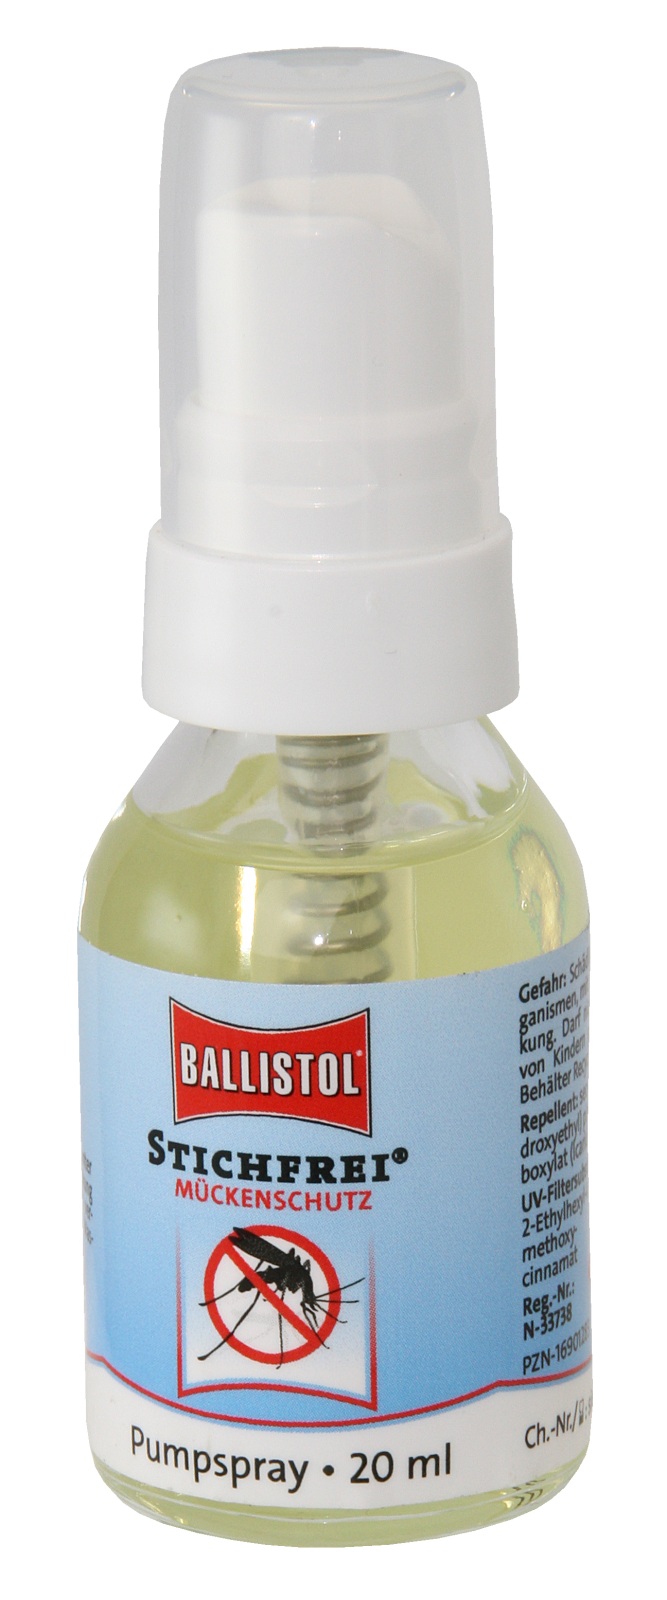 Ballistol Stichfrei; 20ml Pumpspray